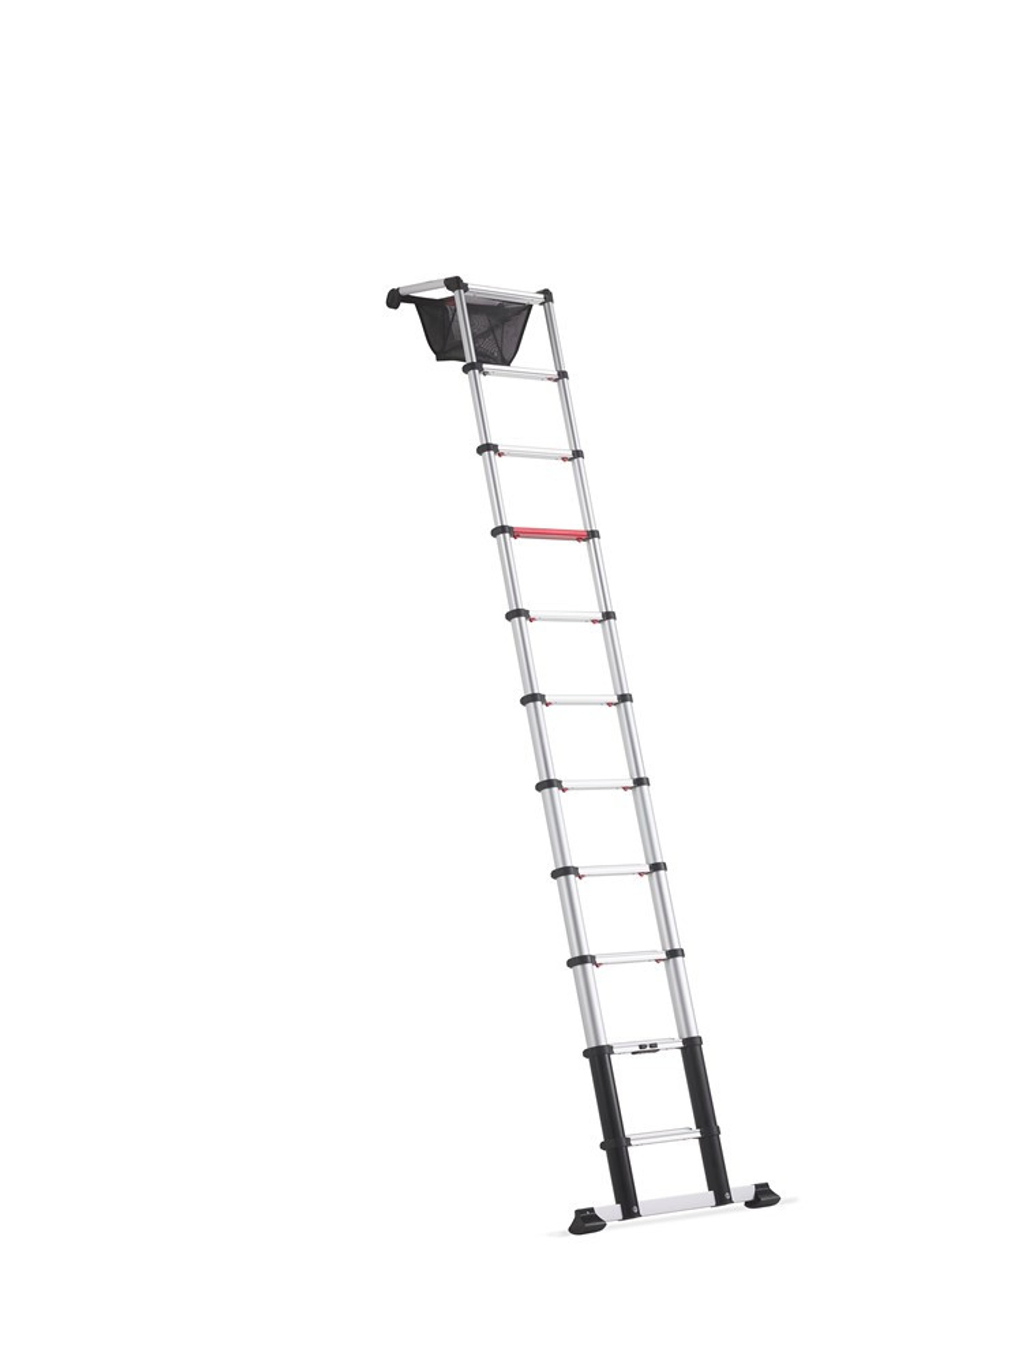 Huur de Altrex professionele telescopische ladder 11 treden 4,2 meter van Altrex bij BIYU. Compact, lichtgewicht en in hoogte verstelbaar. Perfect voor klussen in kleine ruimtes.